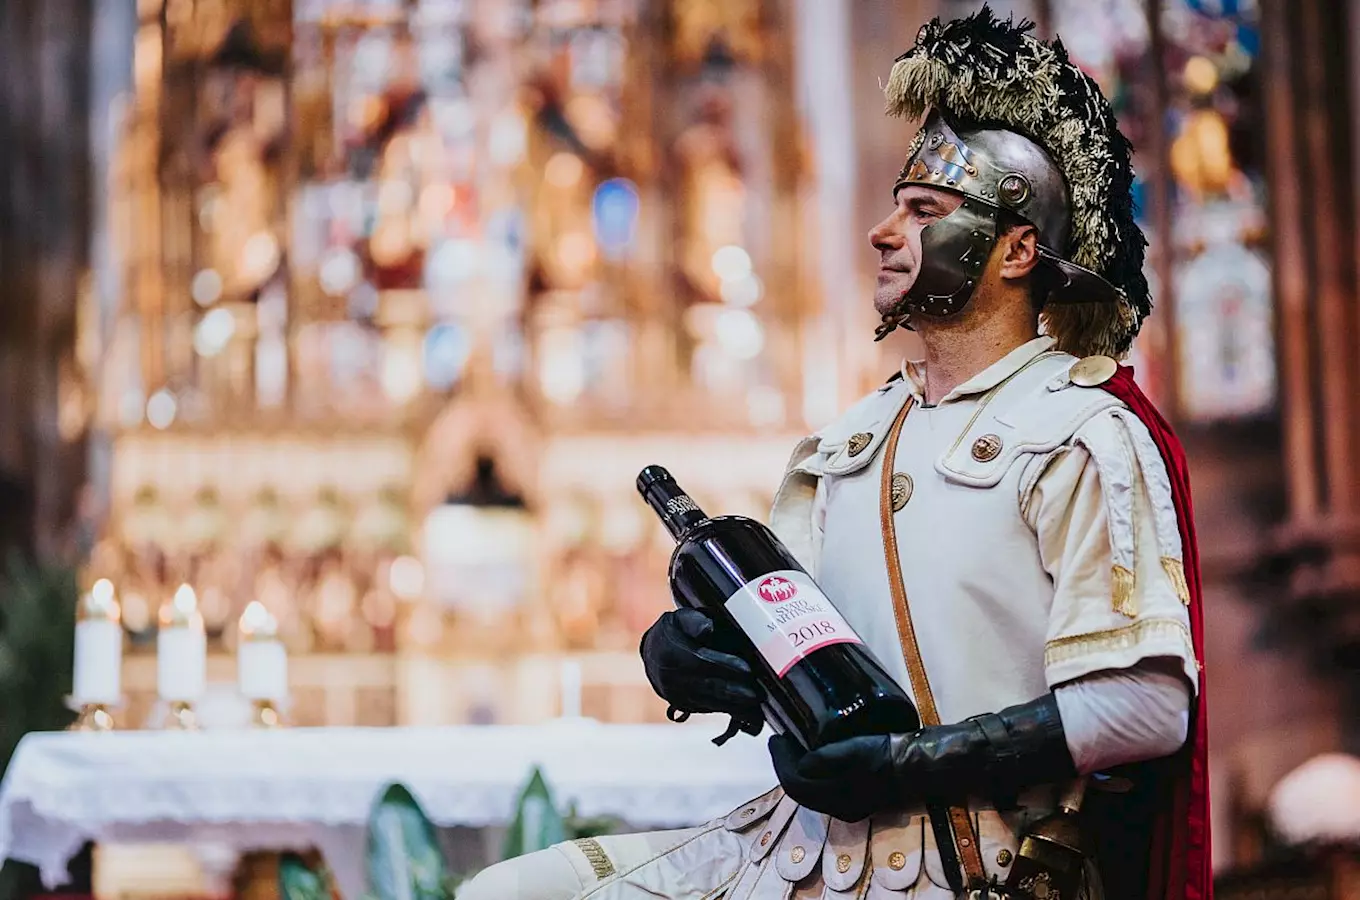 Svatý Martin přijíždí – ochutnejte mladá vína i tradiční husu!